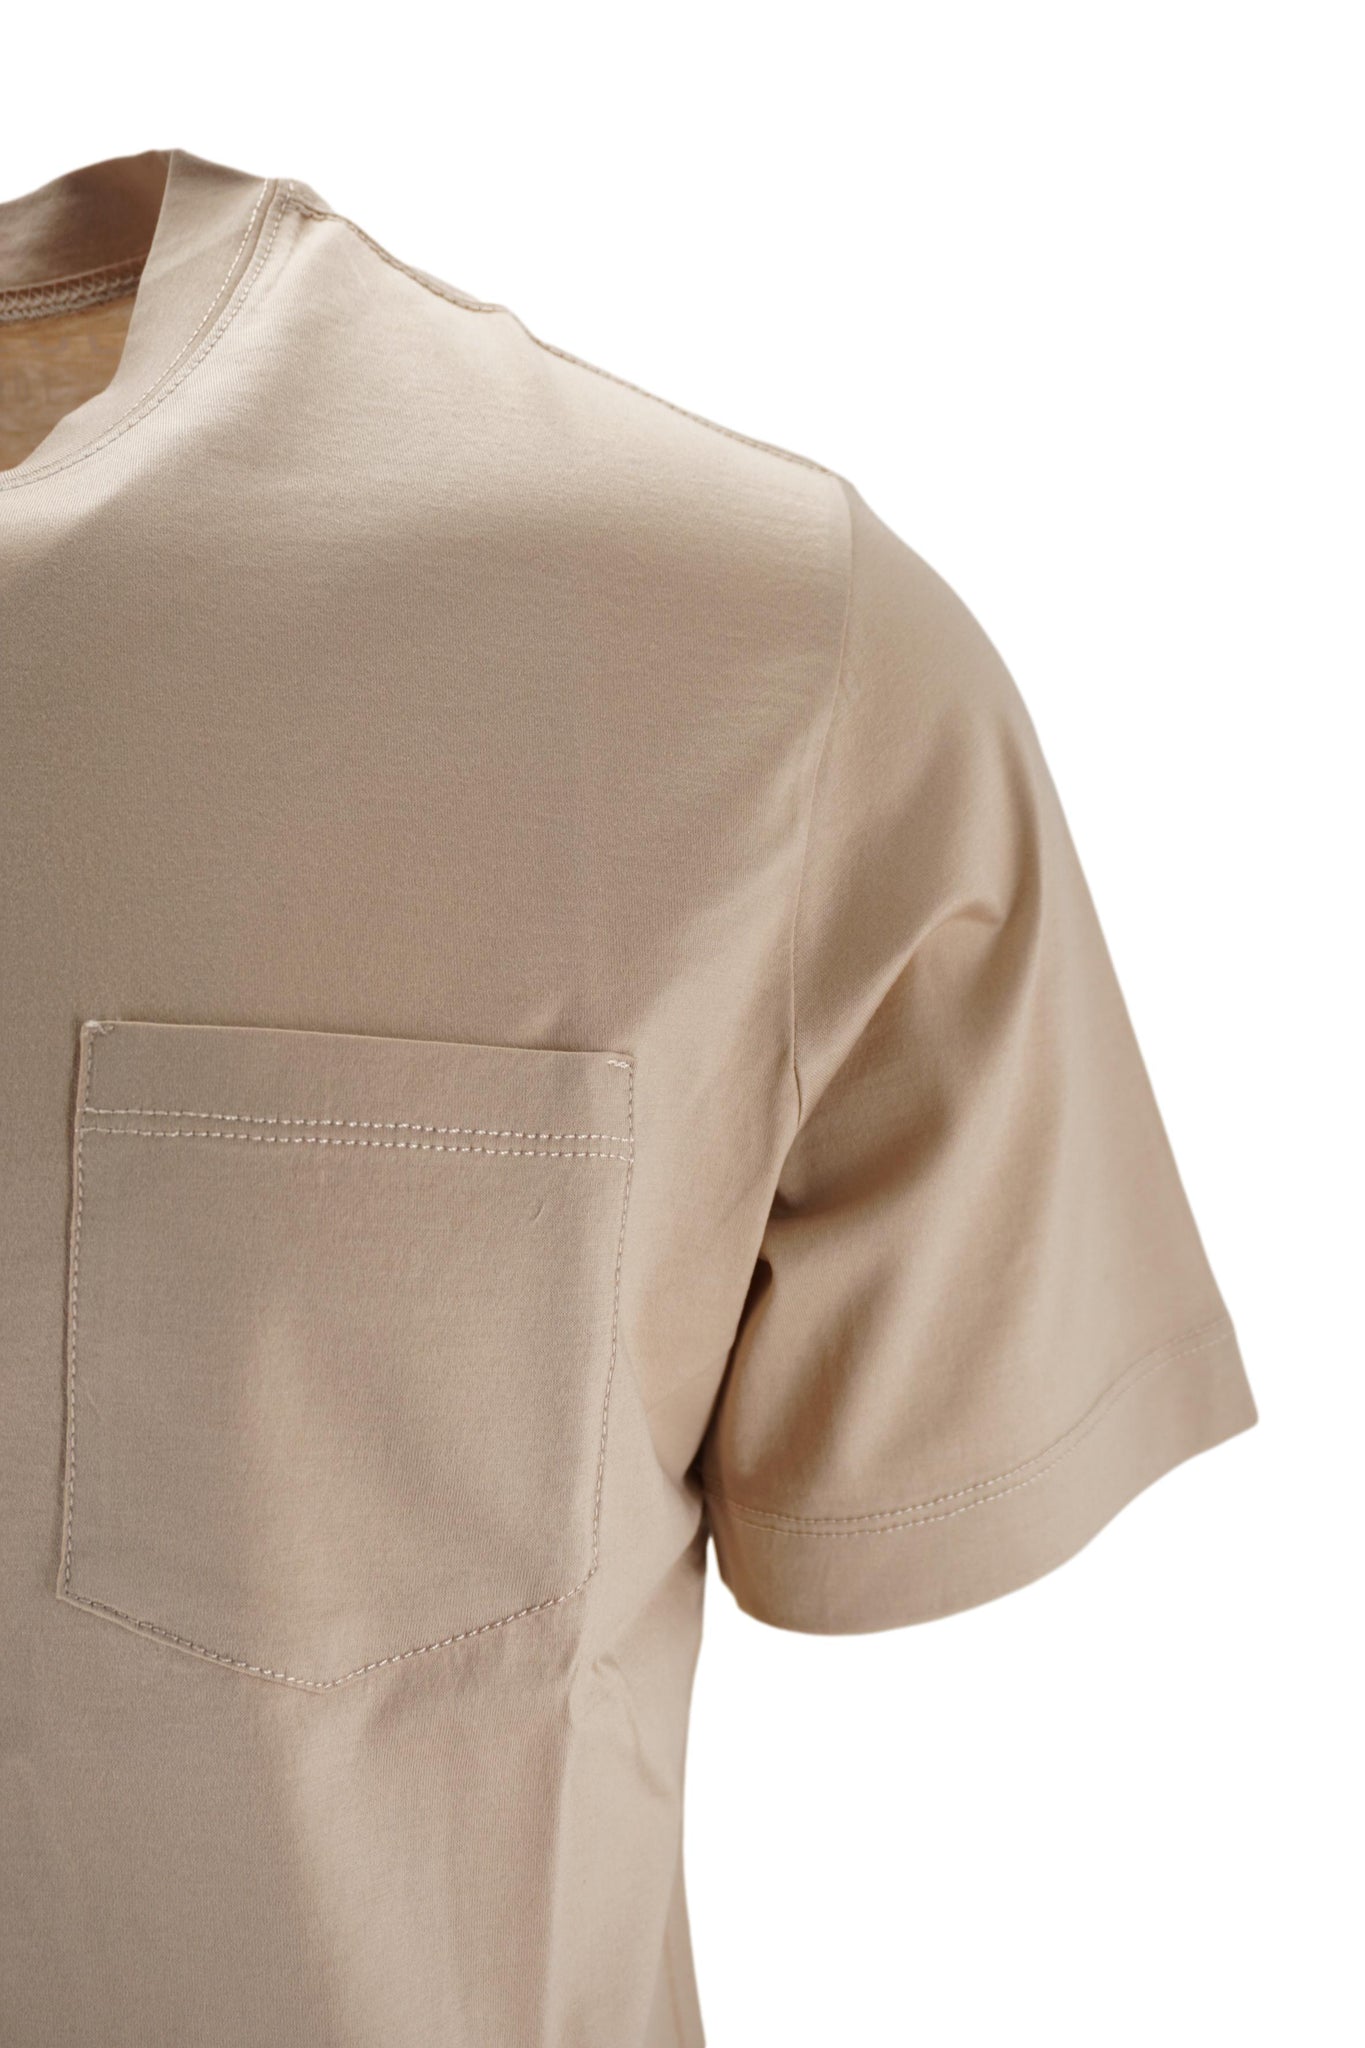 T-Shirt con Taschino in Jersey di Cotone / Beige - Ideal Moda